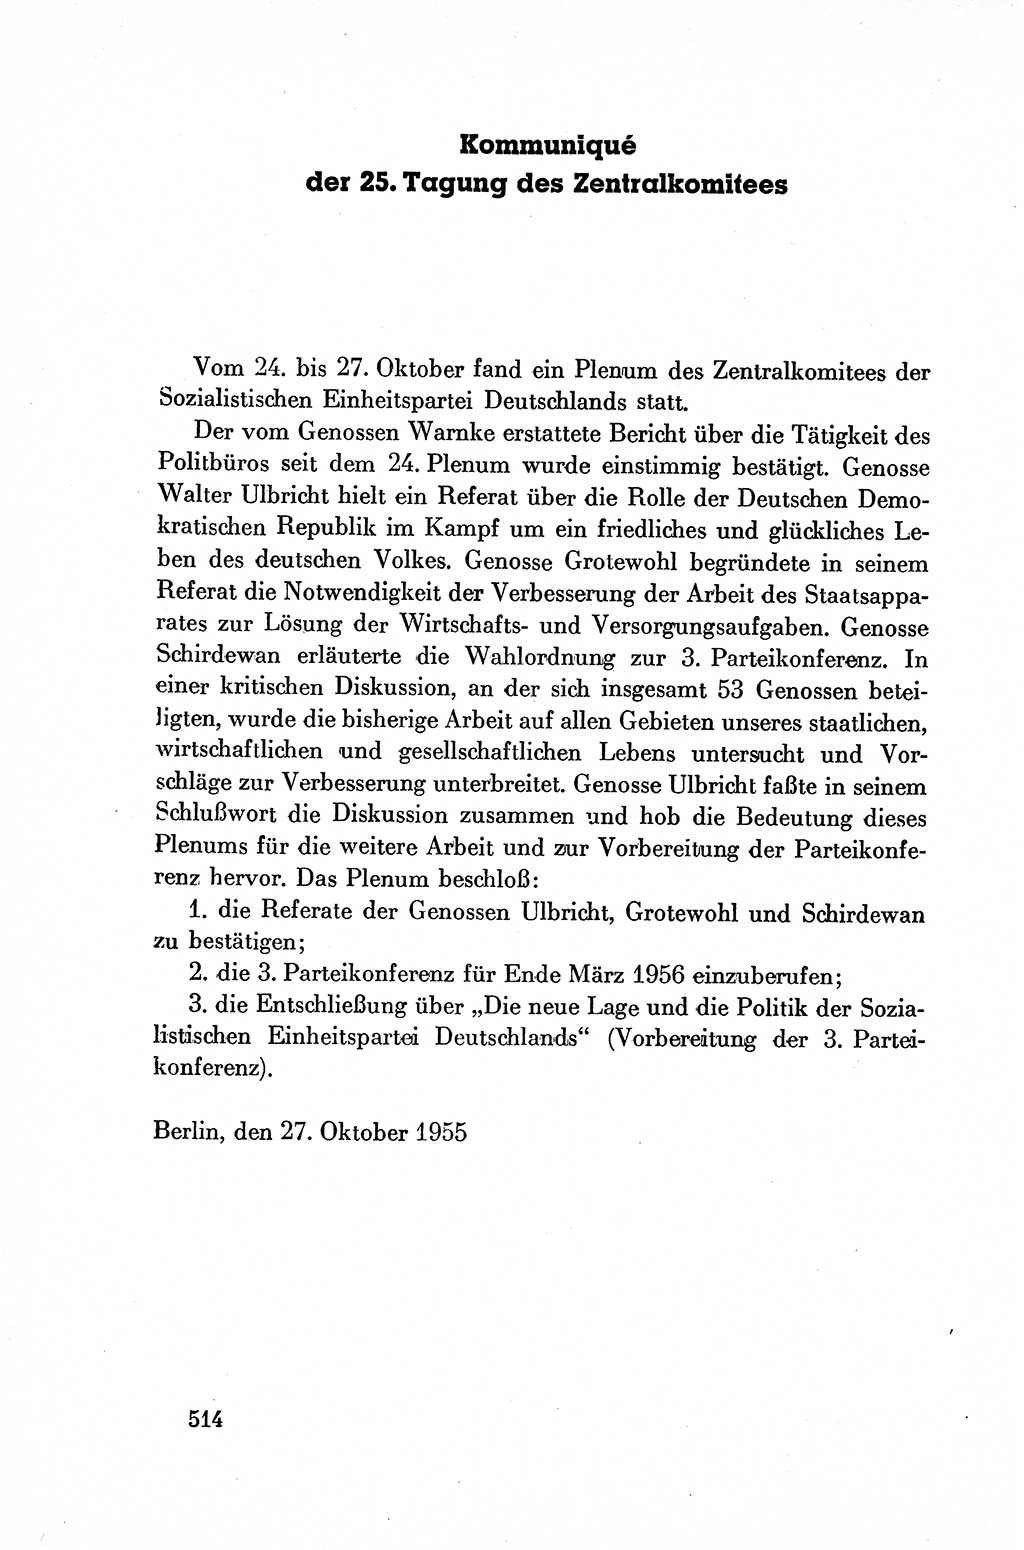 Dokumente der Sozialistischen Einheitspartei Deutschlands (SED) [Deutsche Demokratische Republik (DDR)] 1954-1955, Seite 514 (Dok. SED DDR 1954-1955, S. 514)